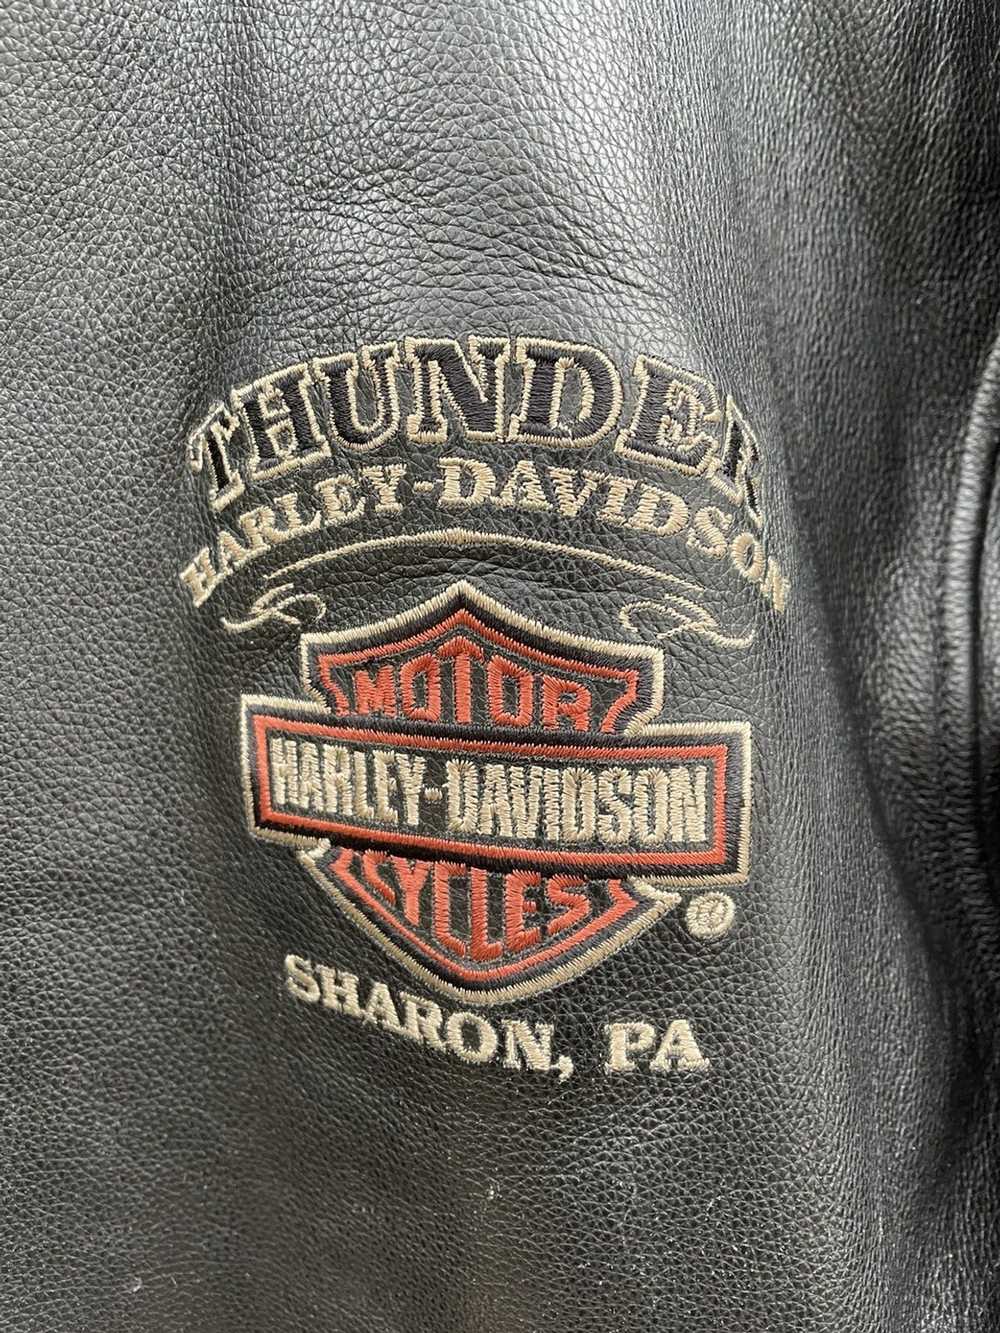 Harley Davidson Harley Davidson Men Distressed Le… - image 2